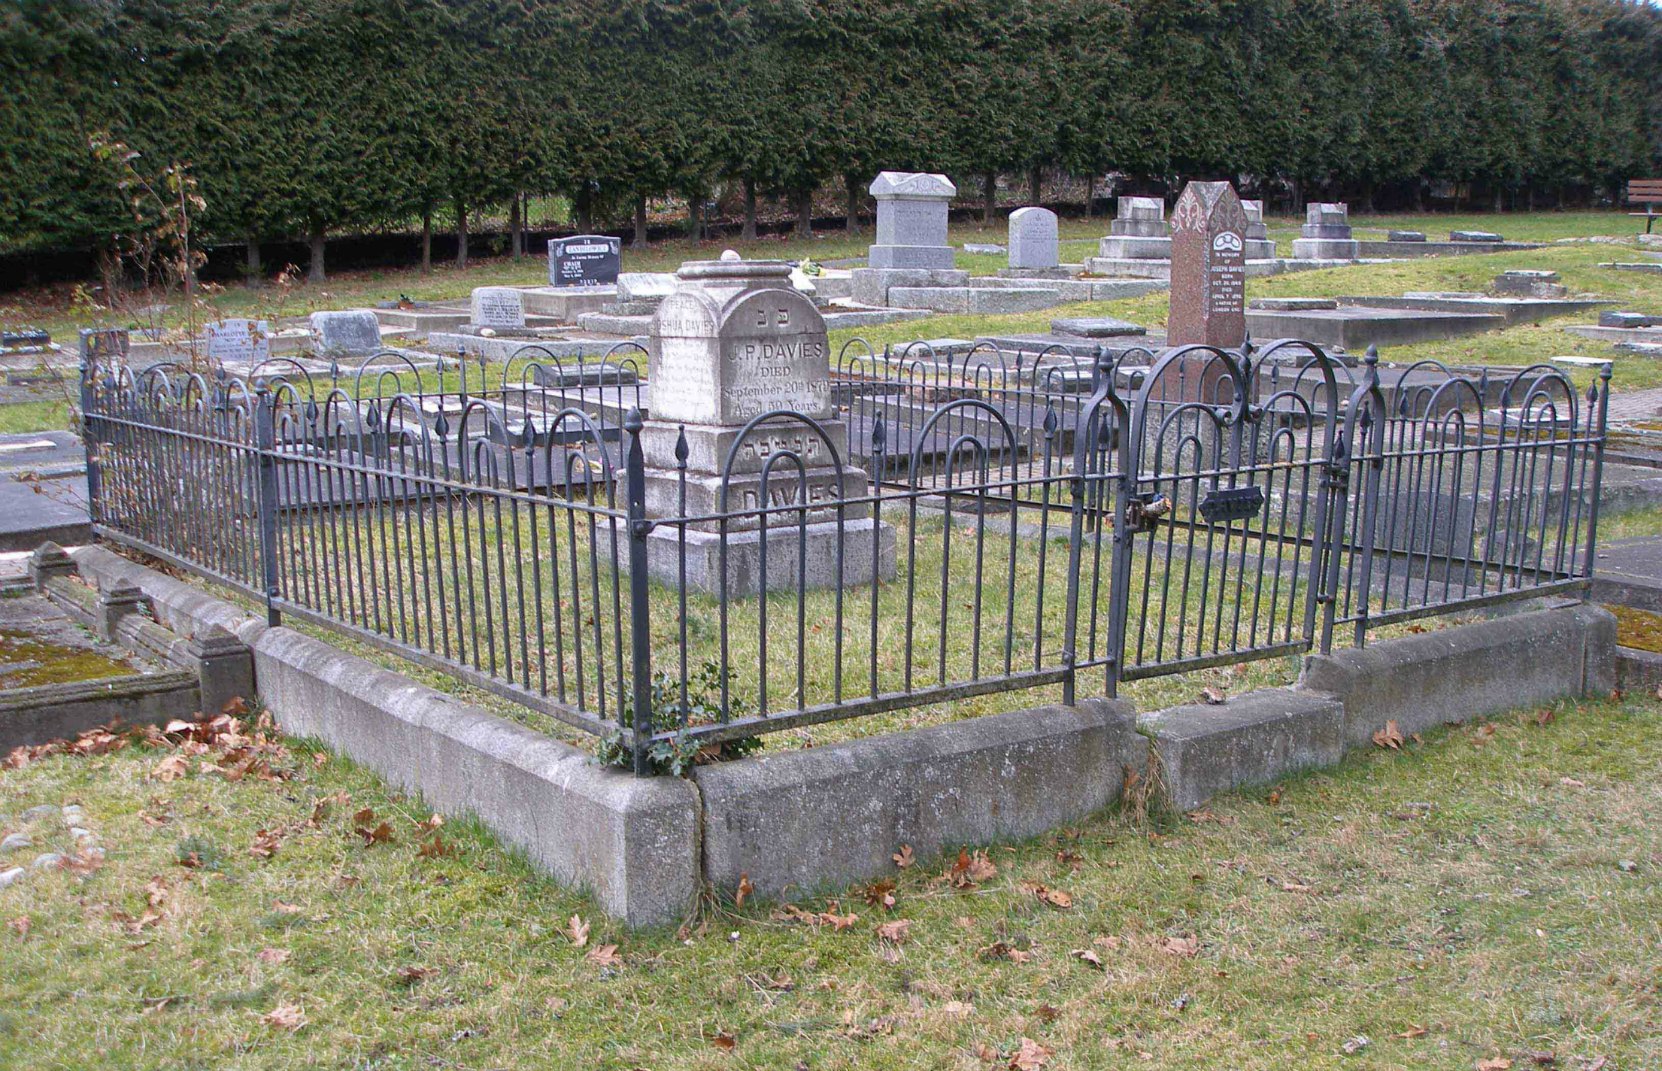 The grave of Judah Philip Davies and Joshua Philip Davies (1846-1903), Victoria Jewish Cemetery